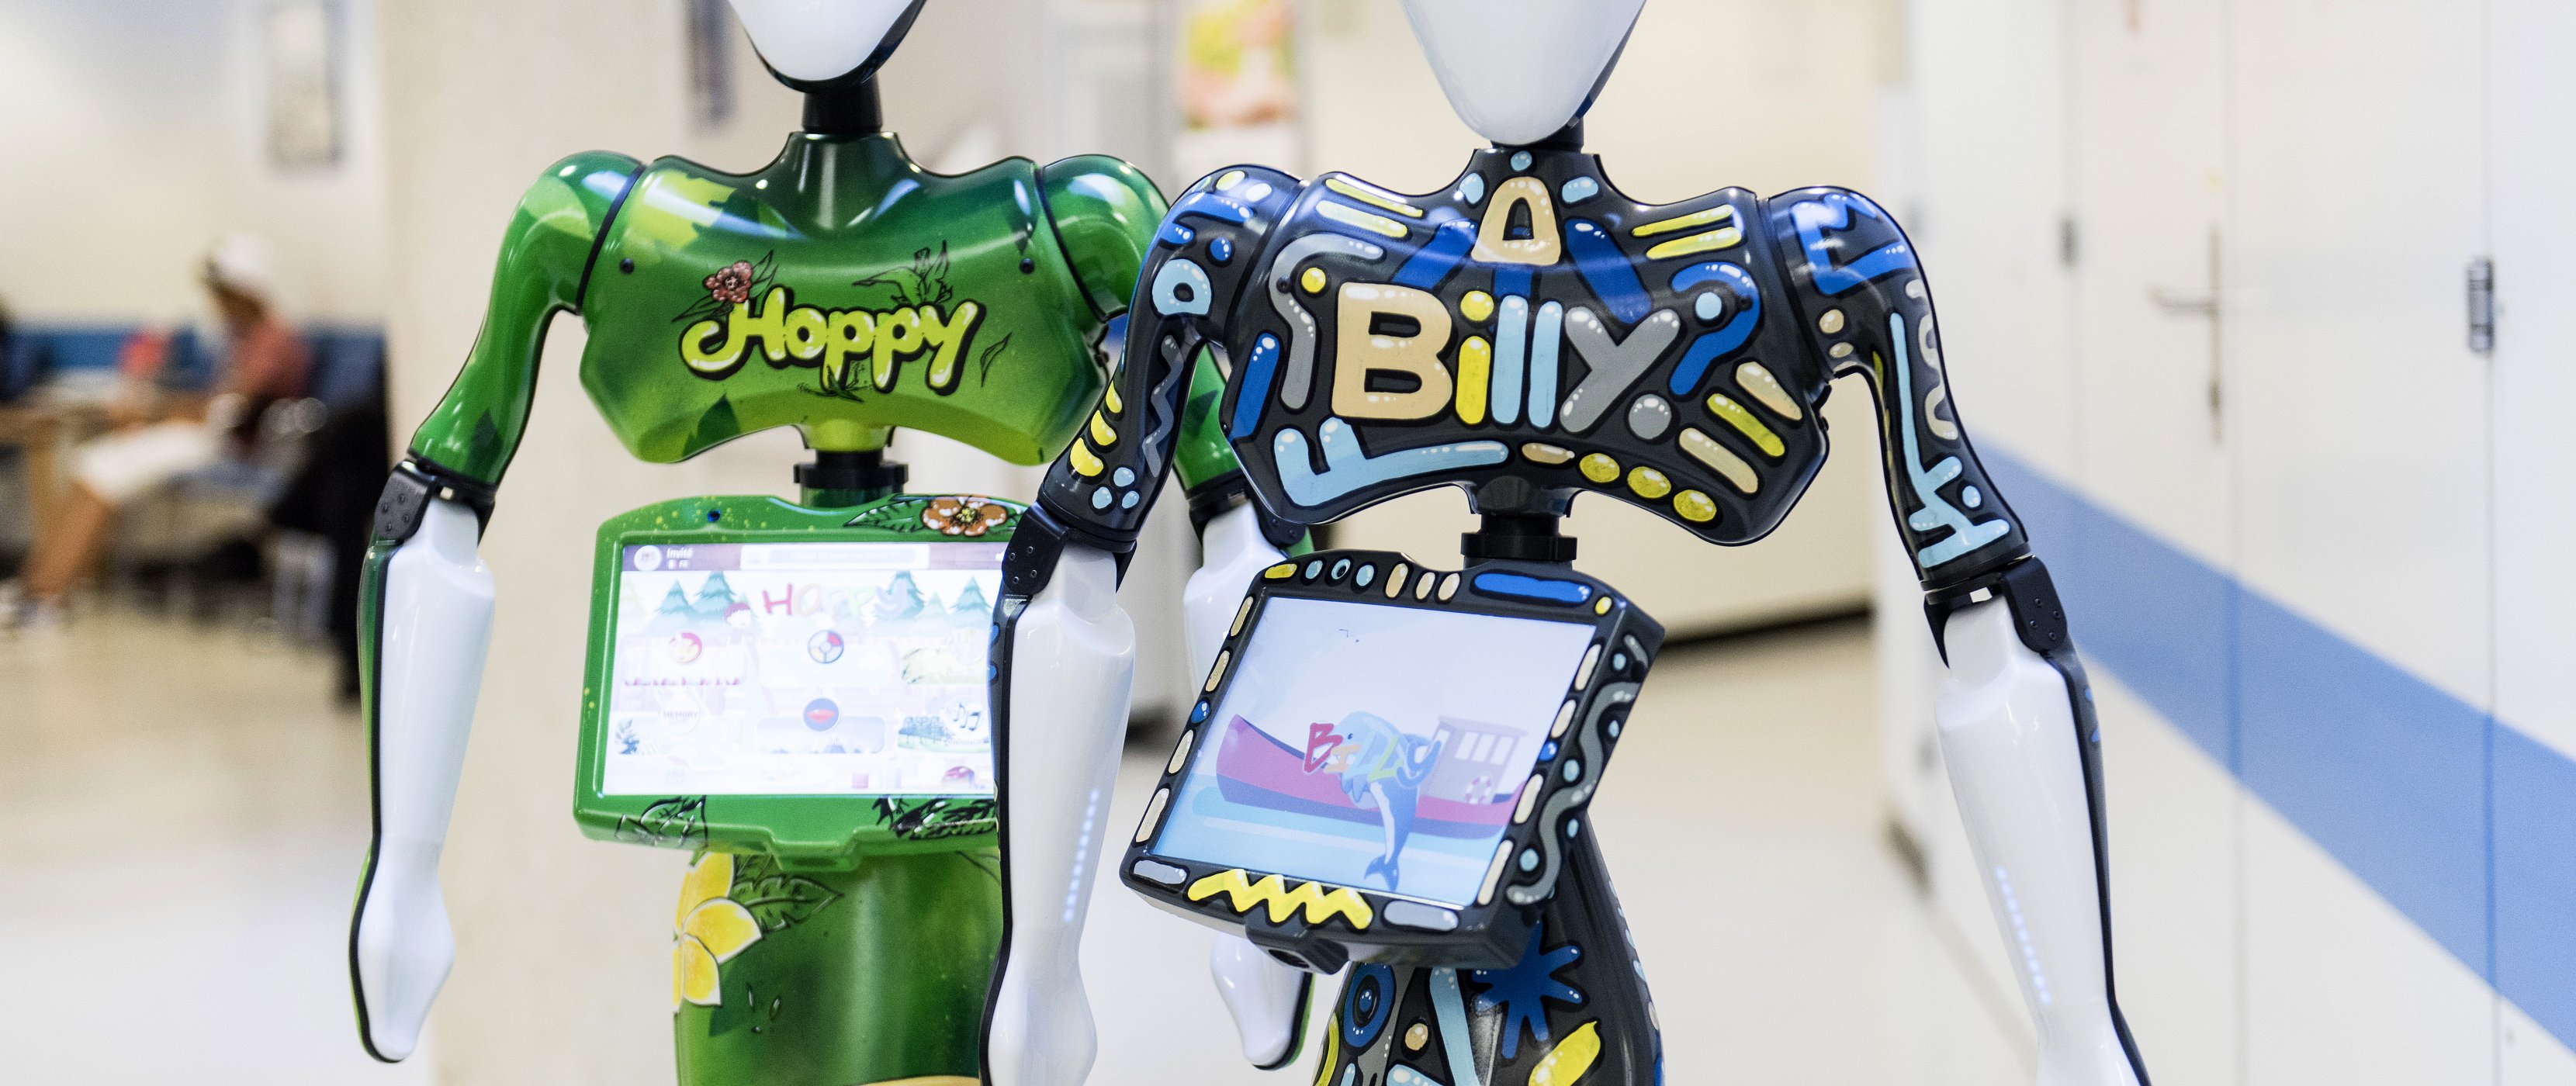 hoppy et billy les robots de la pédiatire